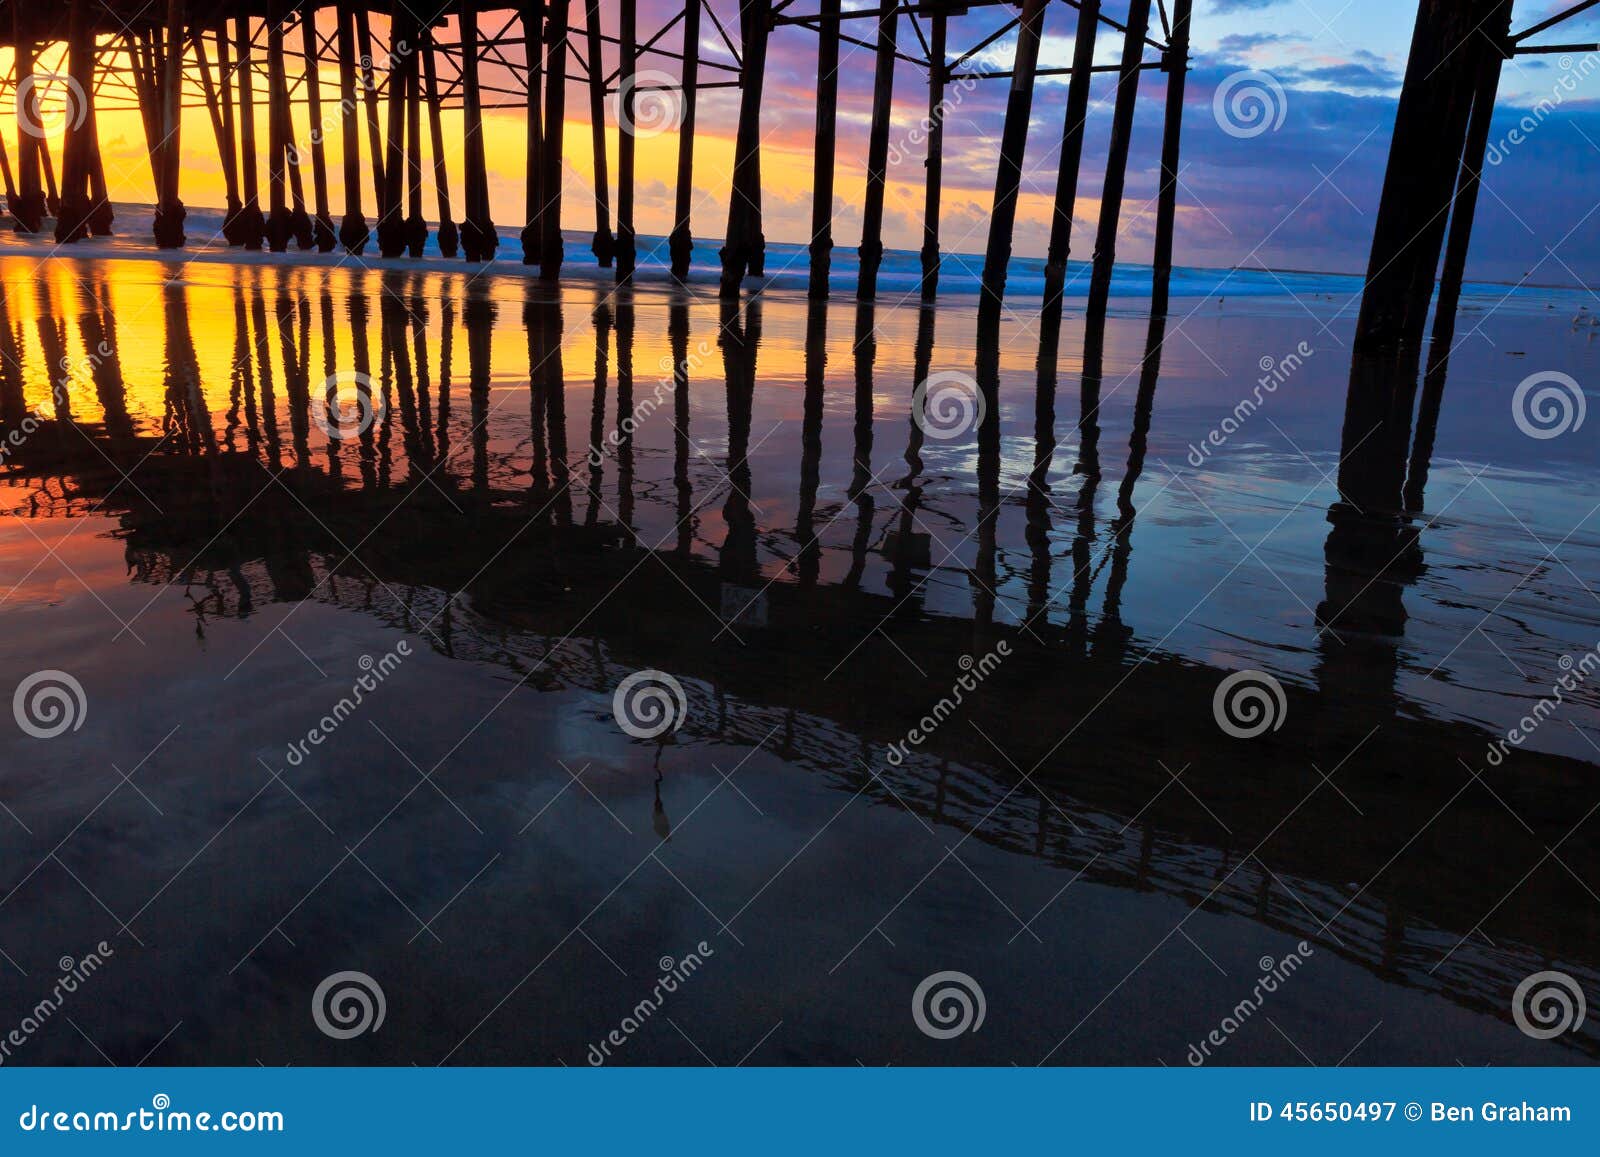 oceanside pier at sunset